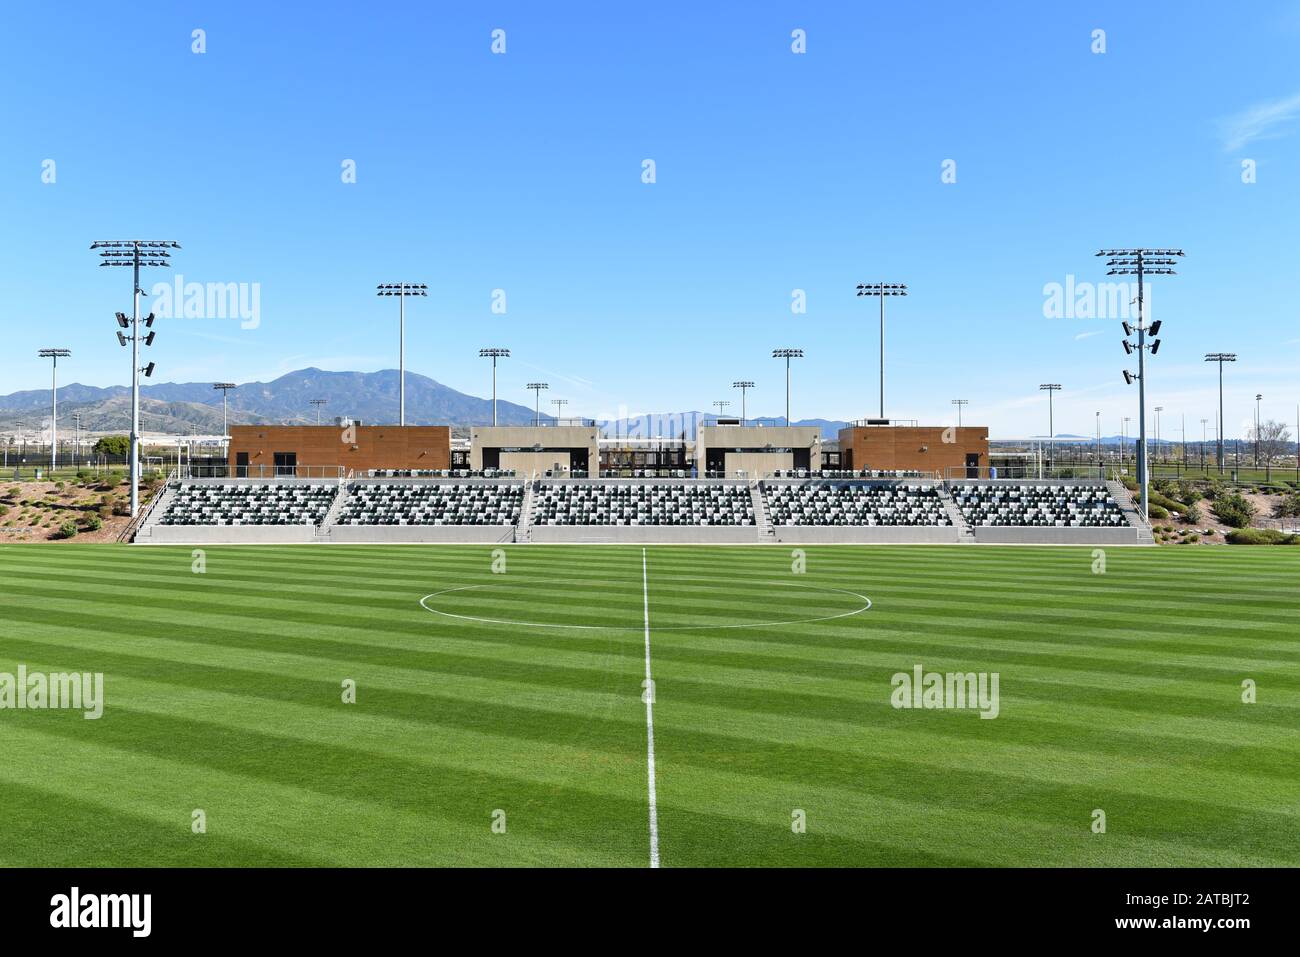 Irvine, CALIFORNIE - 31 JANVIER 2020 : tribune réservée aux visiteurs au stade de football du championnat du Grand parc du comté d'Orange. Banque D'Images